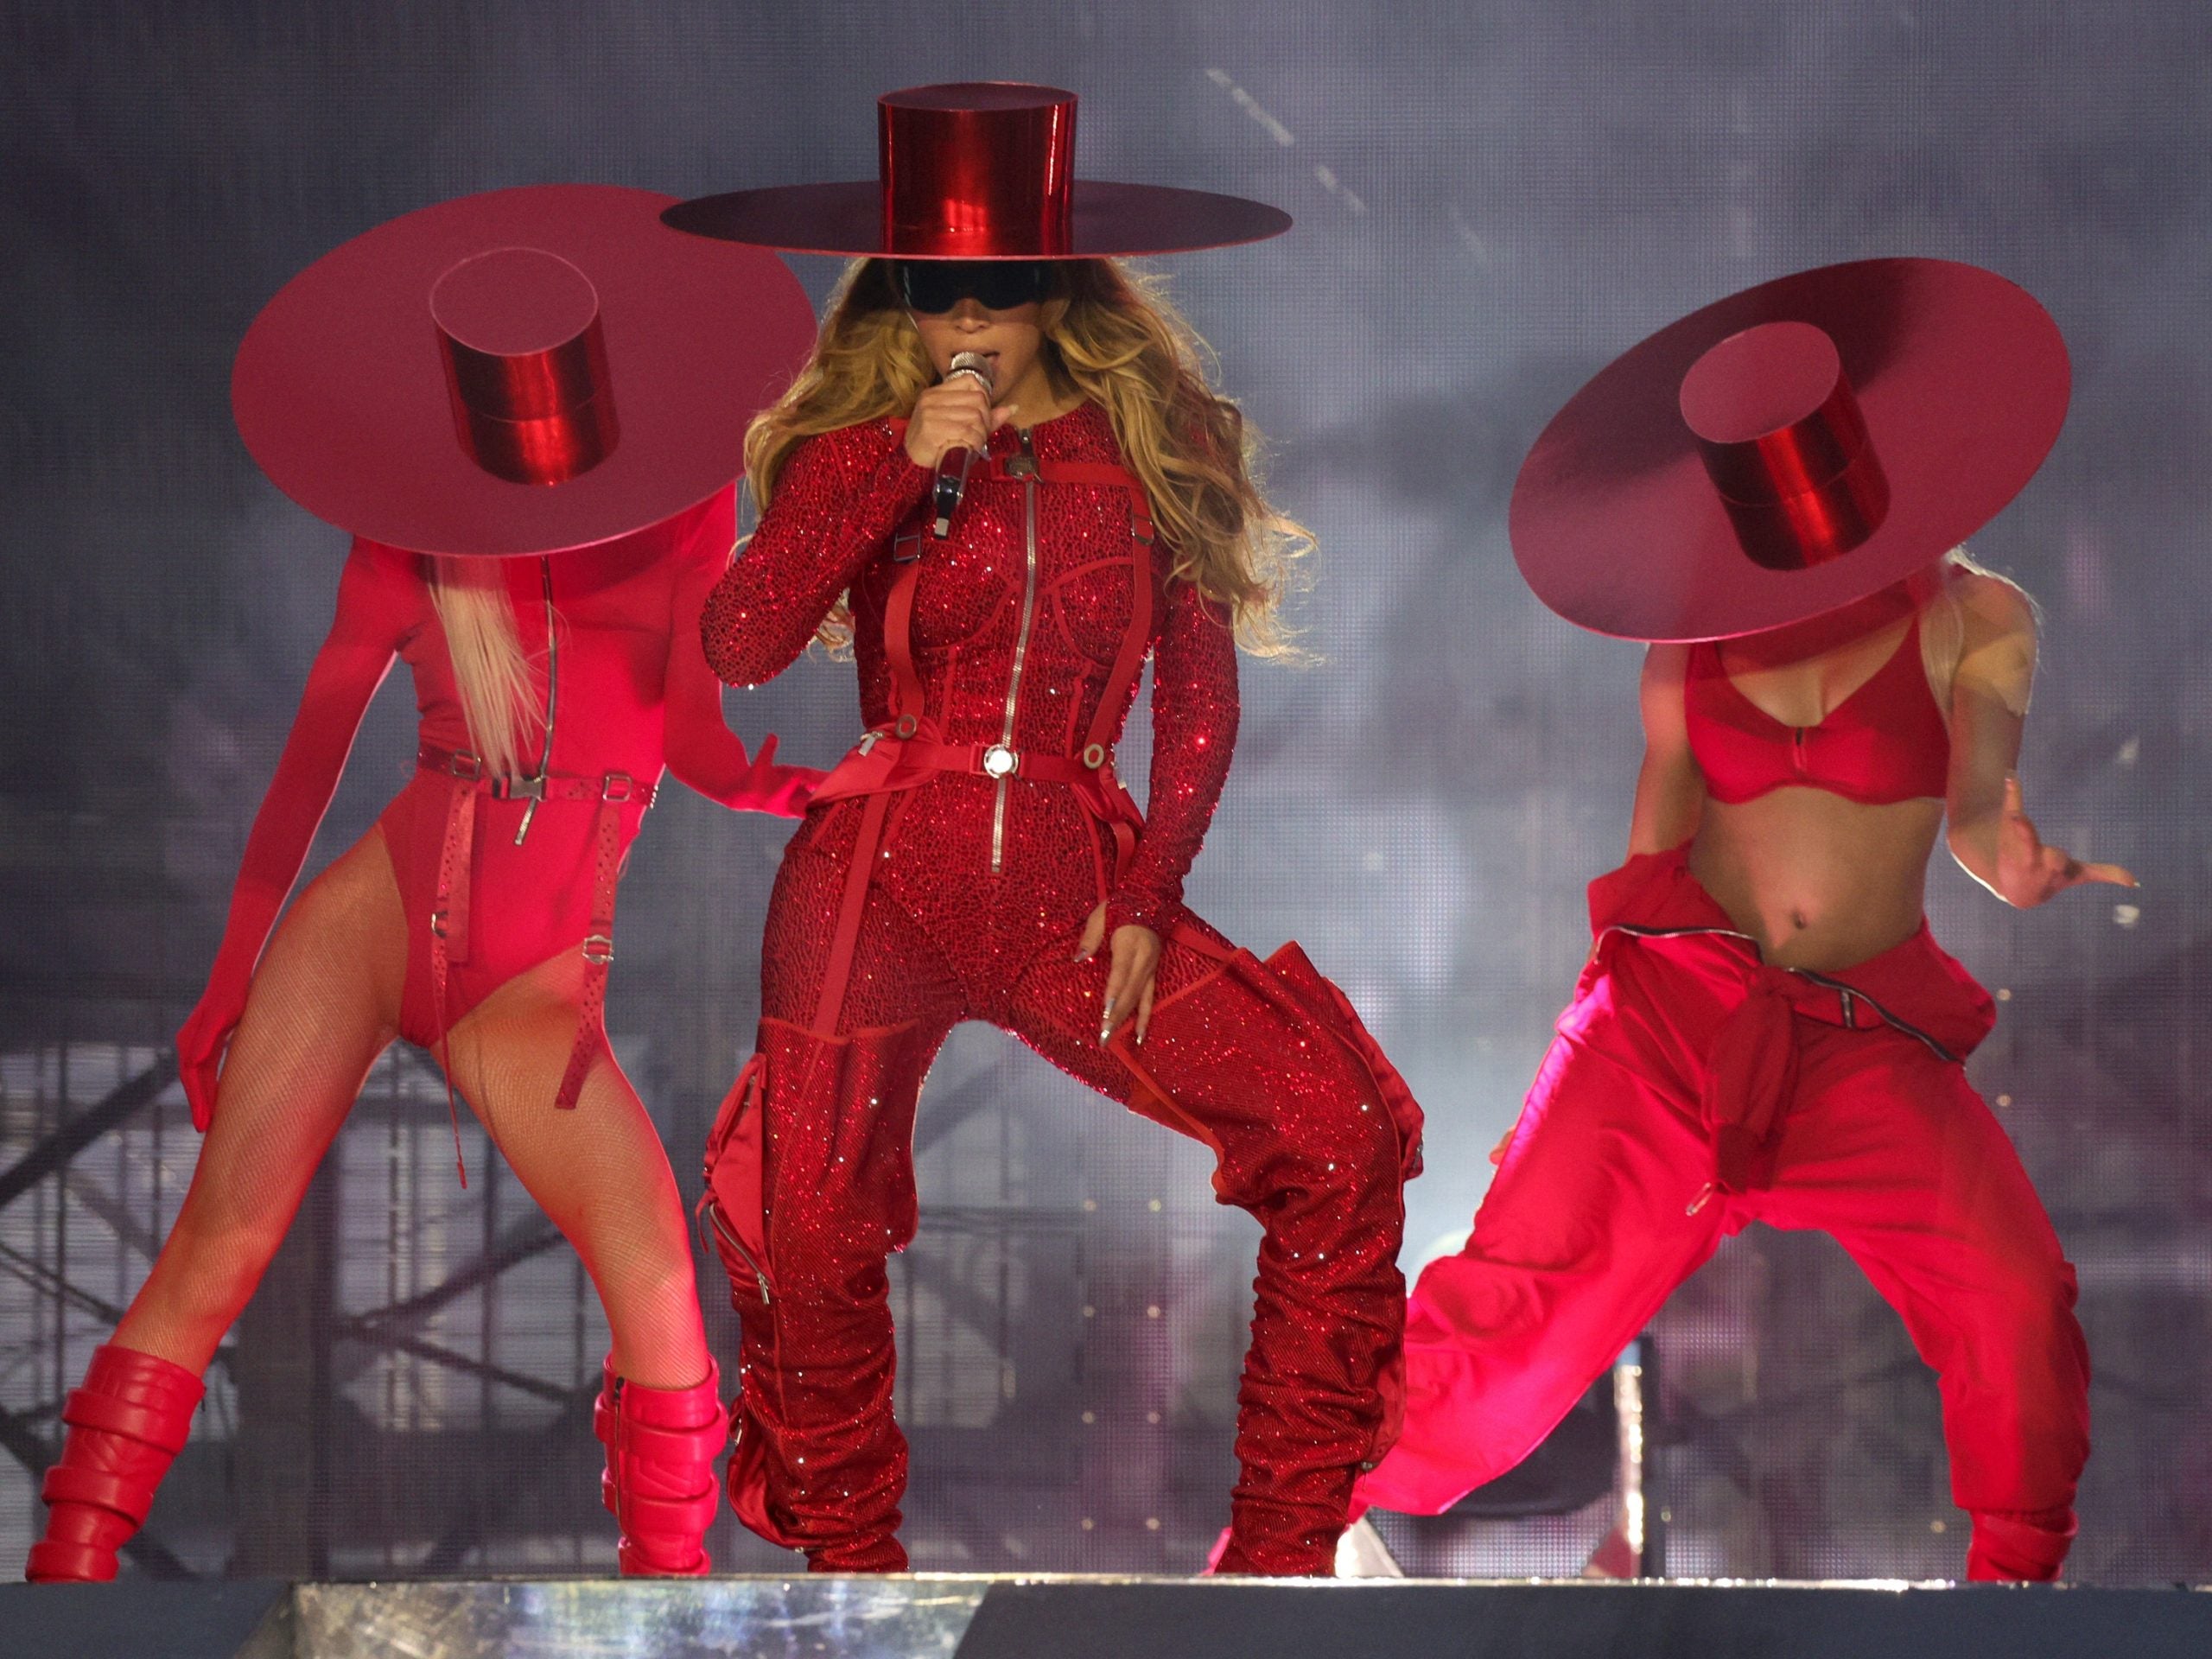 Beyoncé Wears A Custom Off-White Look For London Renaissance Tour Stop